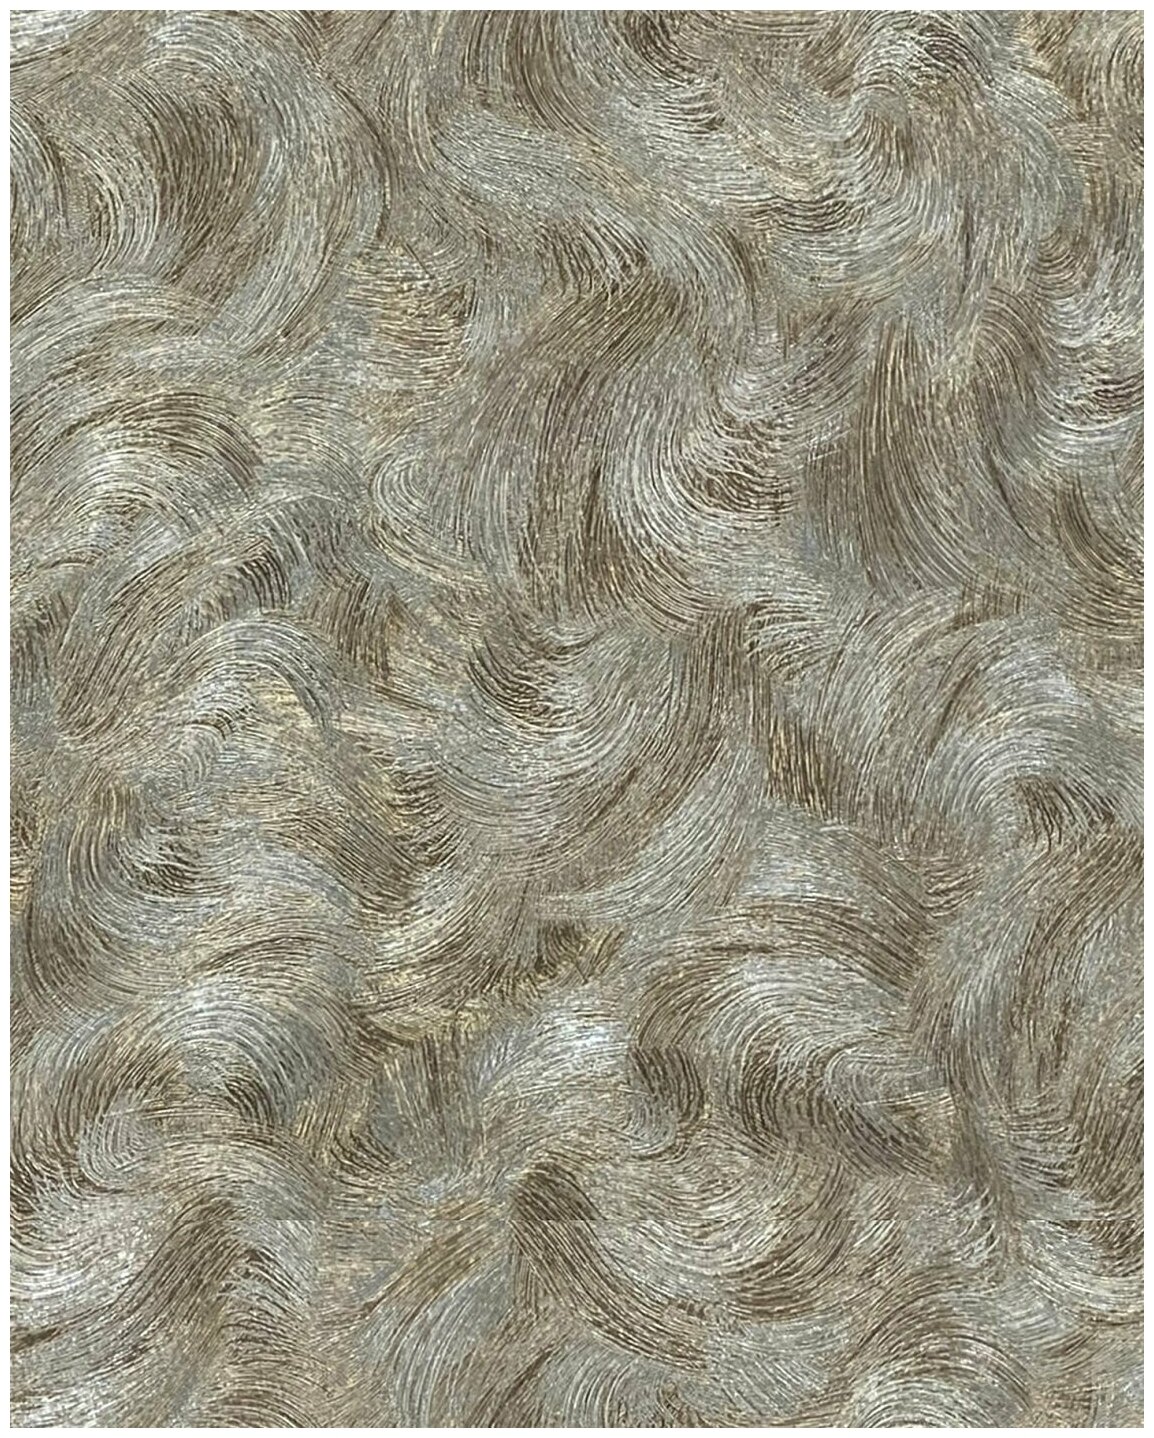 Обои Винил на флизелине Solo Illusion 168405-26 вихри серебристо-коричневые, 1,06*10